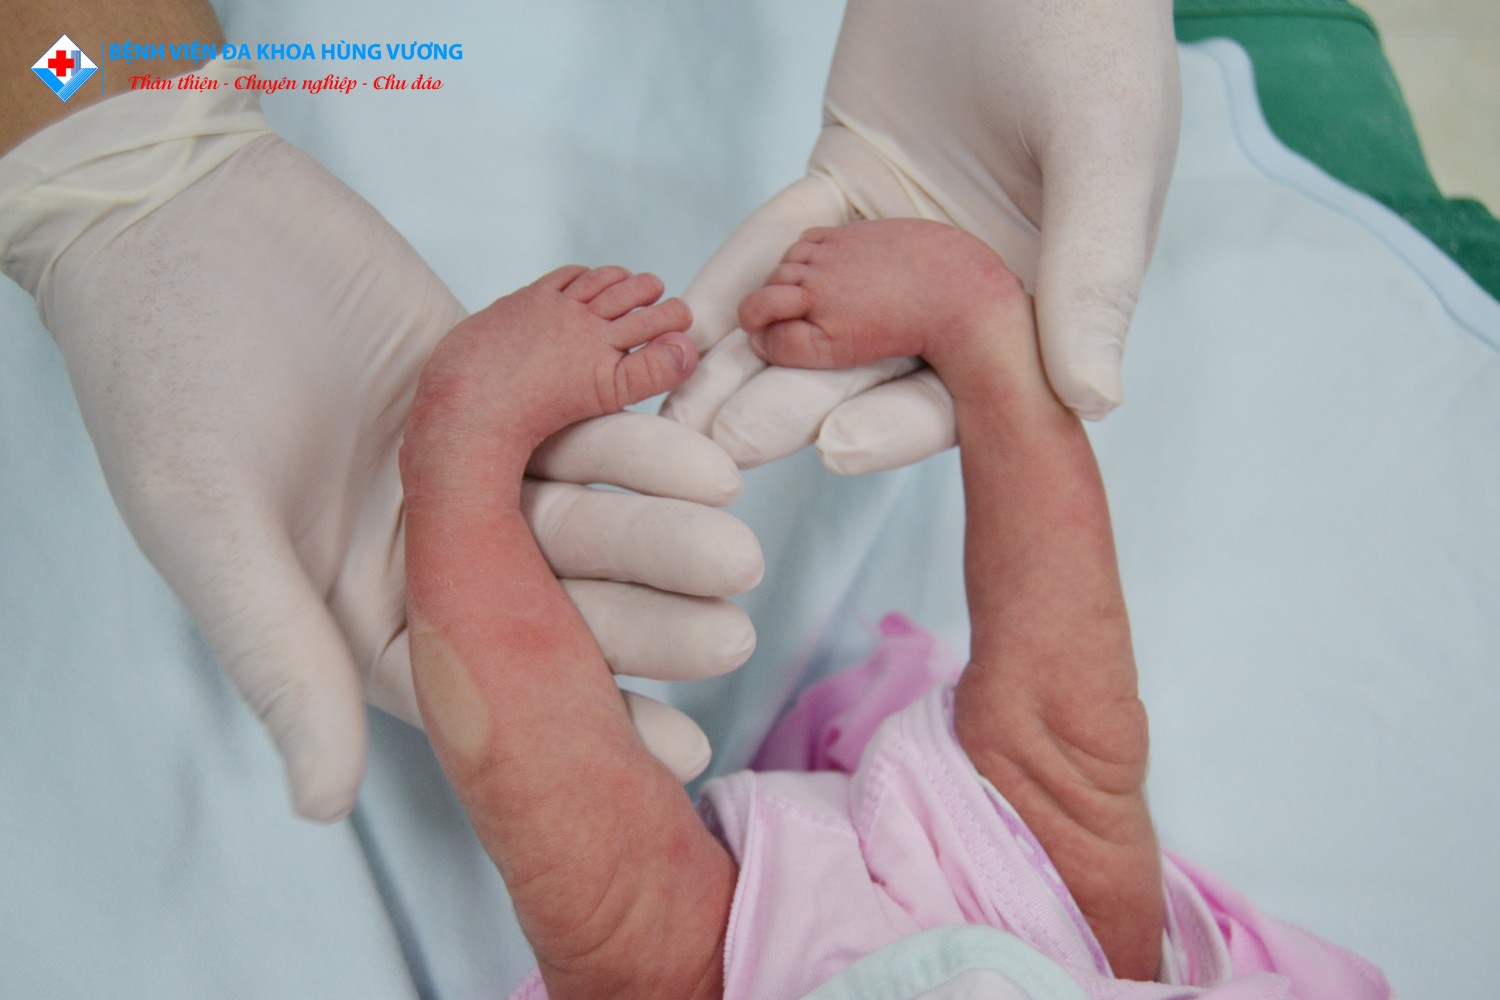 Phục hồi chức năng bàn chân khoèo bẩm sinh cho bé sơ sinh 3 ngày tuổi